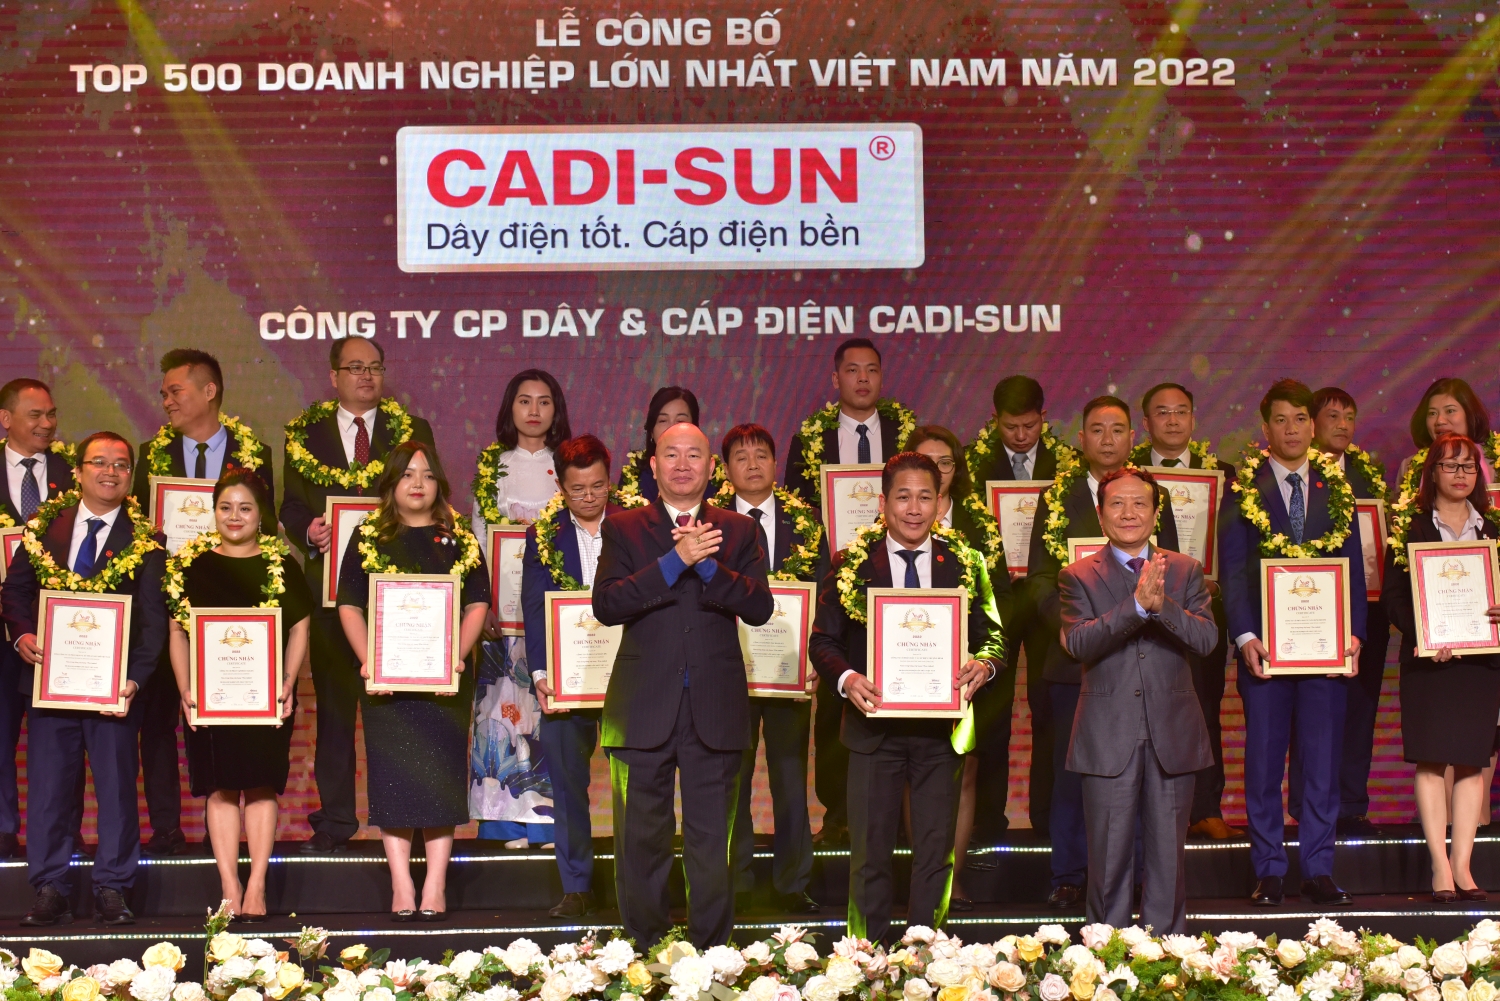 CADI-SUN, tiếp tục duy trì Top 500 doanh nghiệp lớn nhất Việt Nam